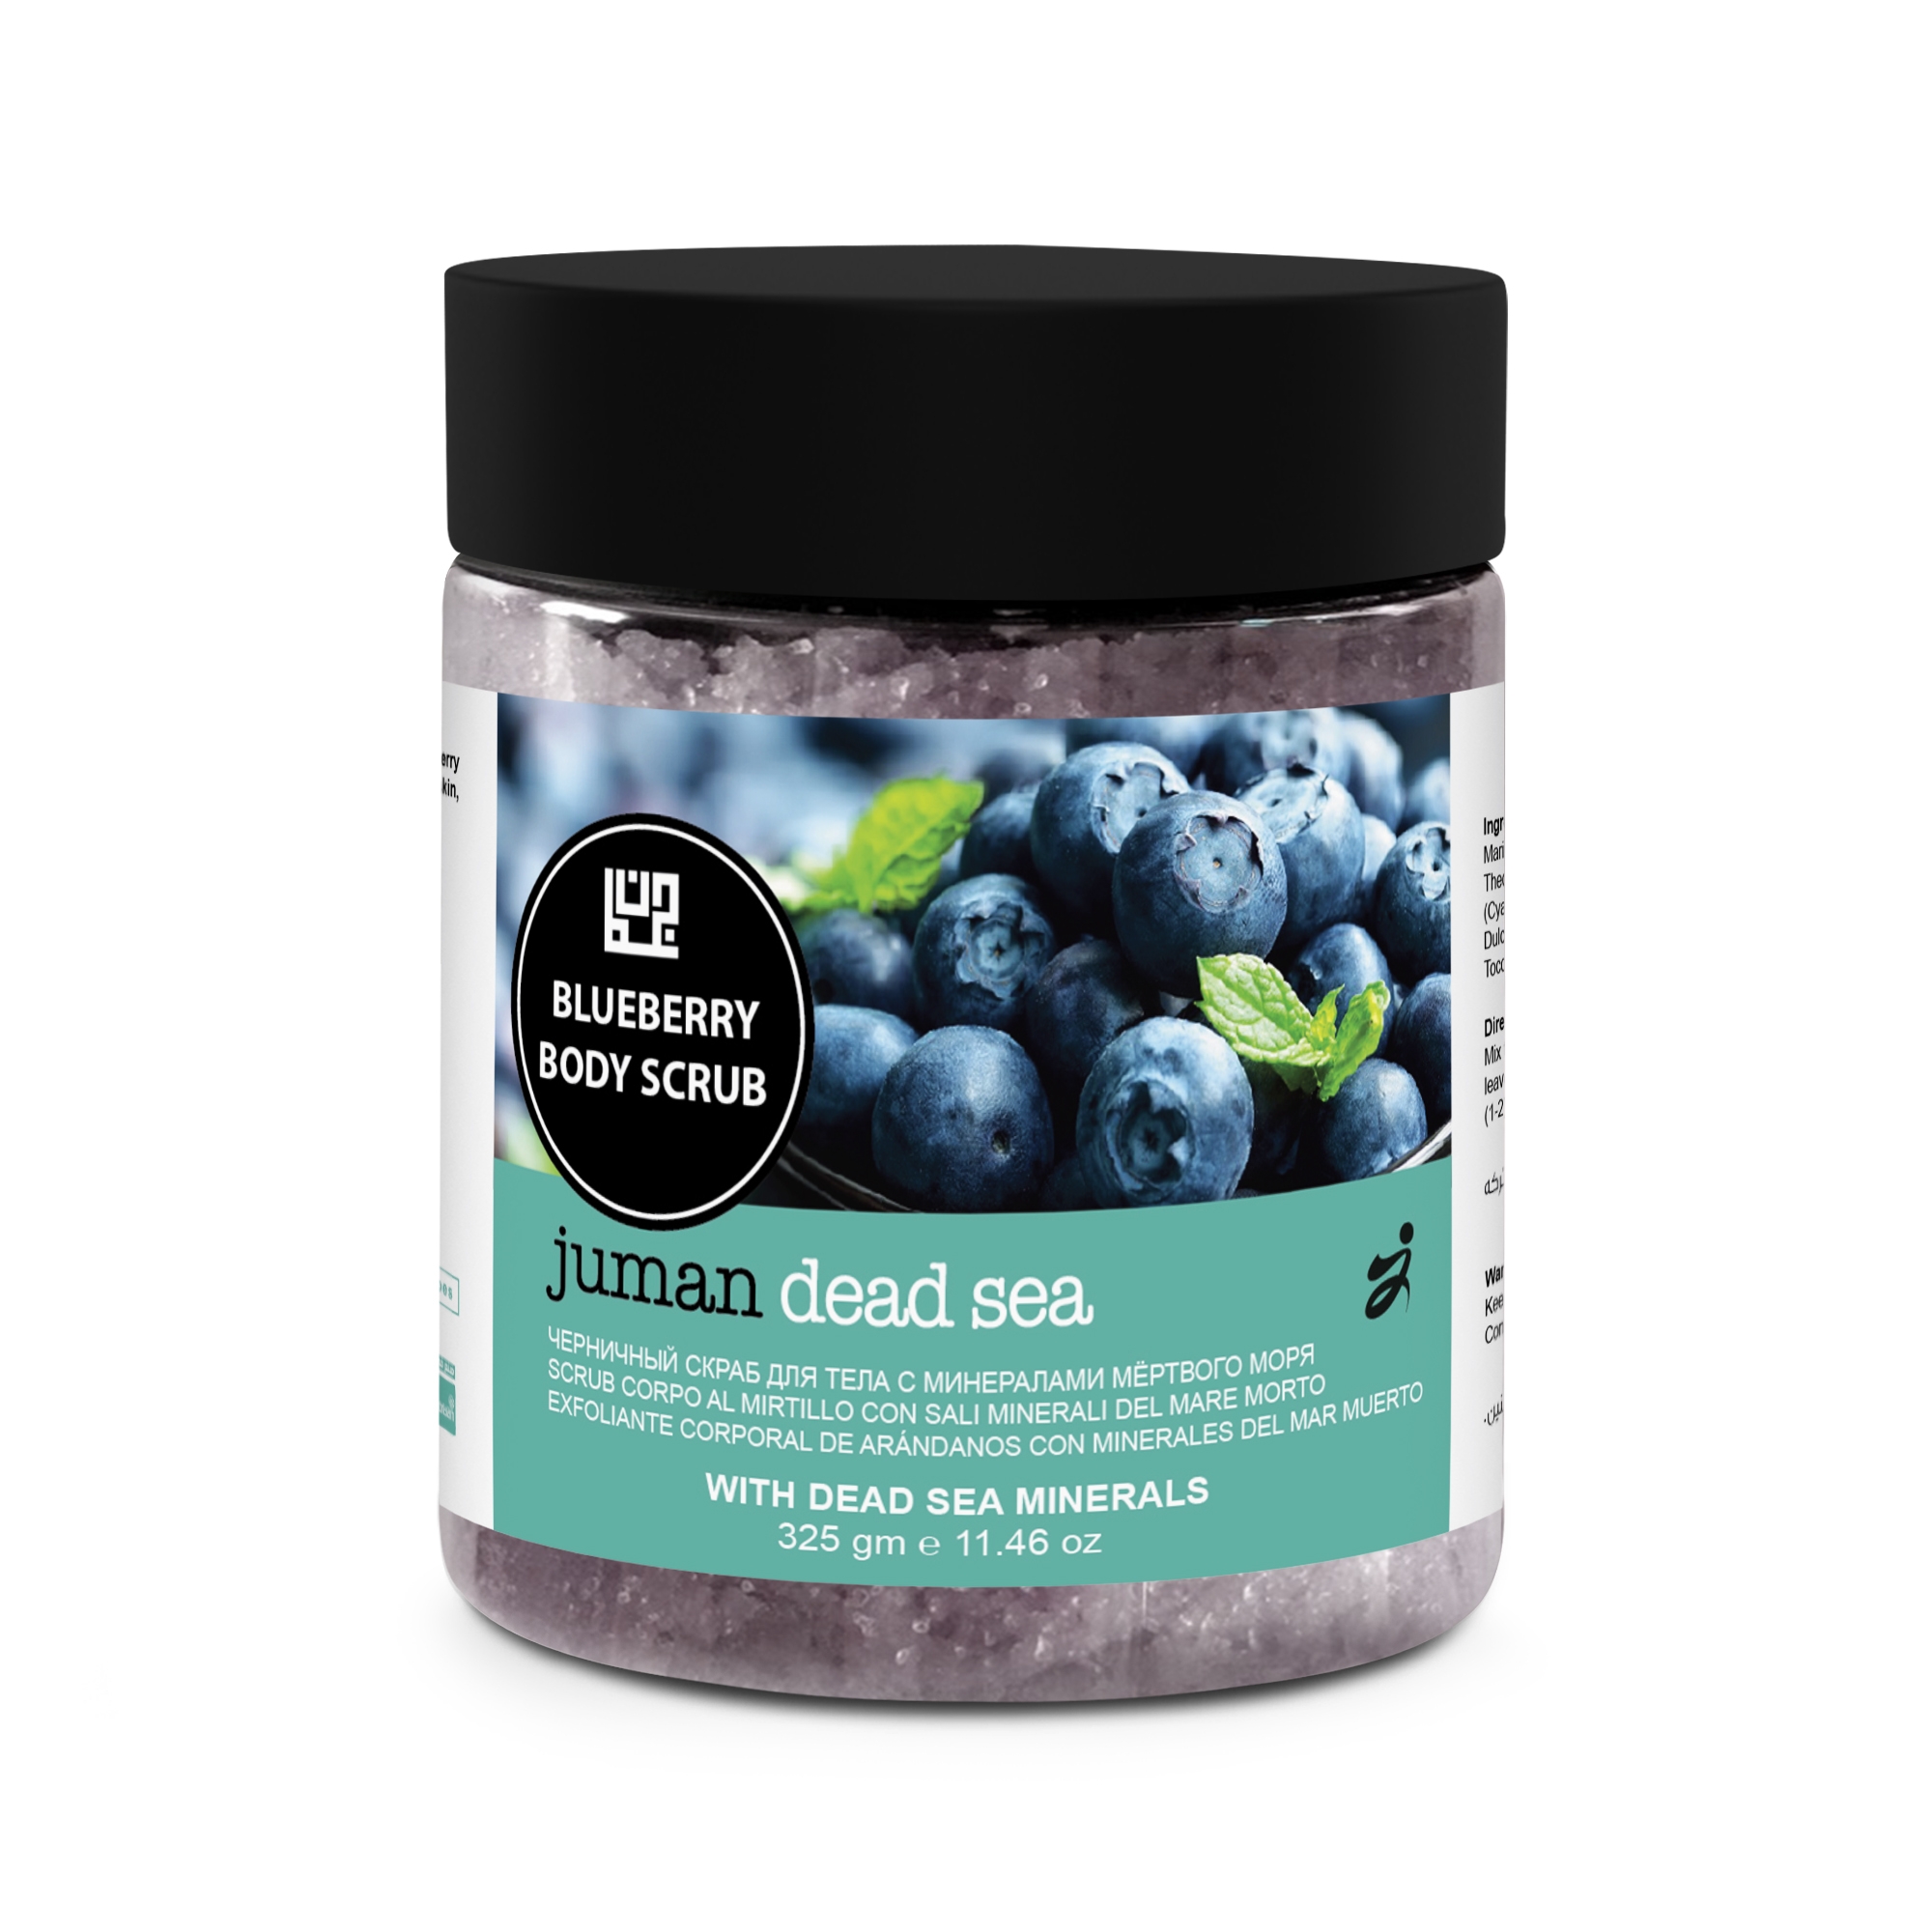 Blueberry Body Scrub with Dead Sea Minerals